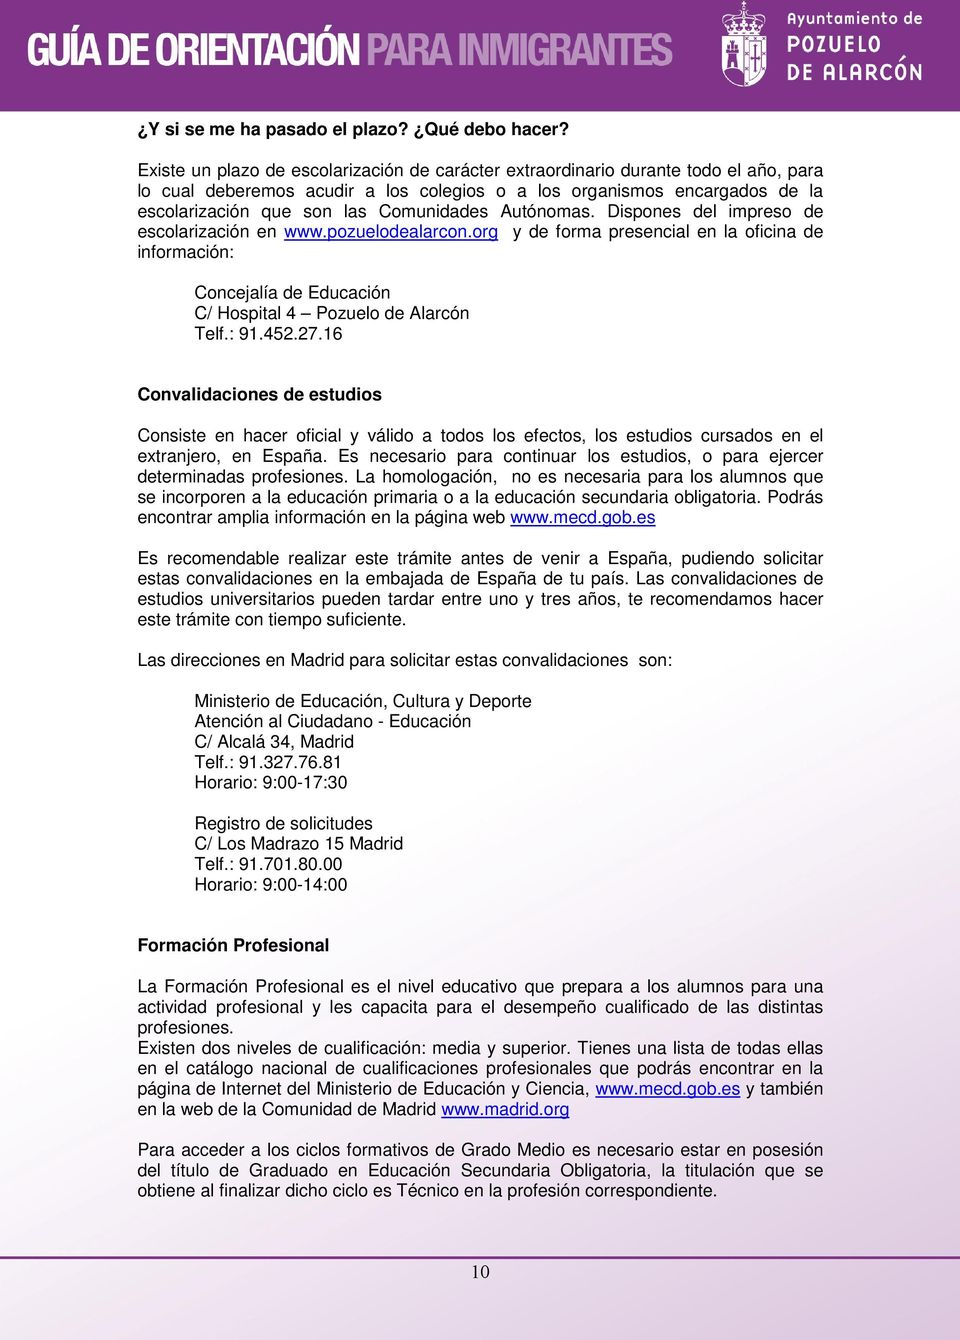 Comunidades Autónomas. Dispones del impreso de escolarización en www.pozuelodealarcon.